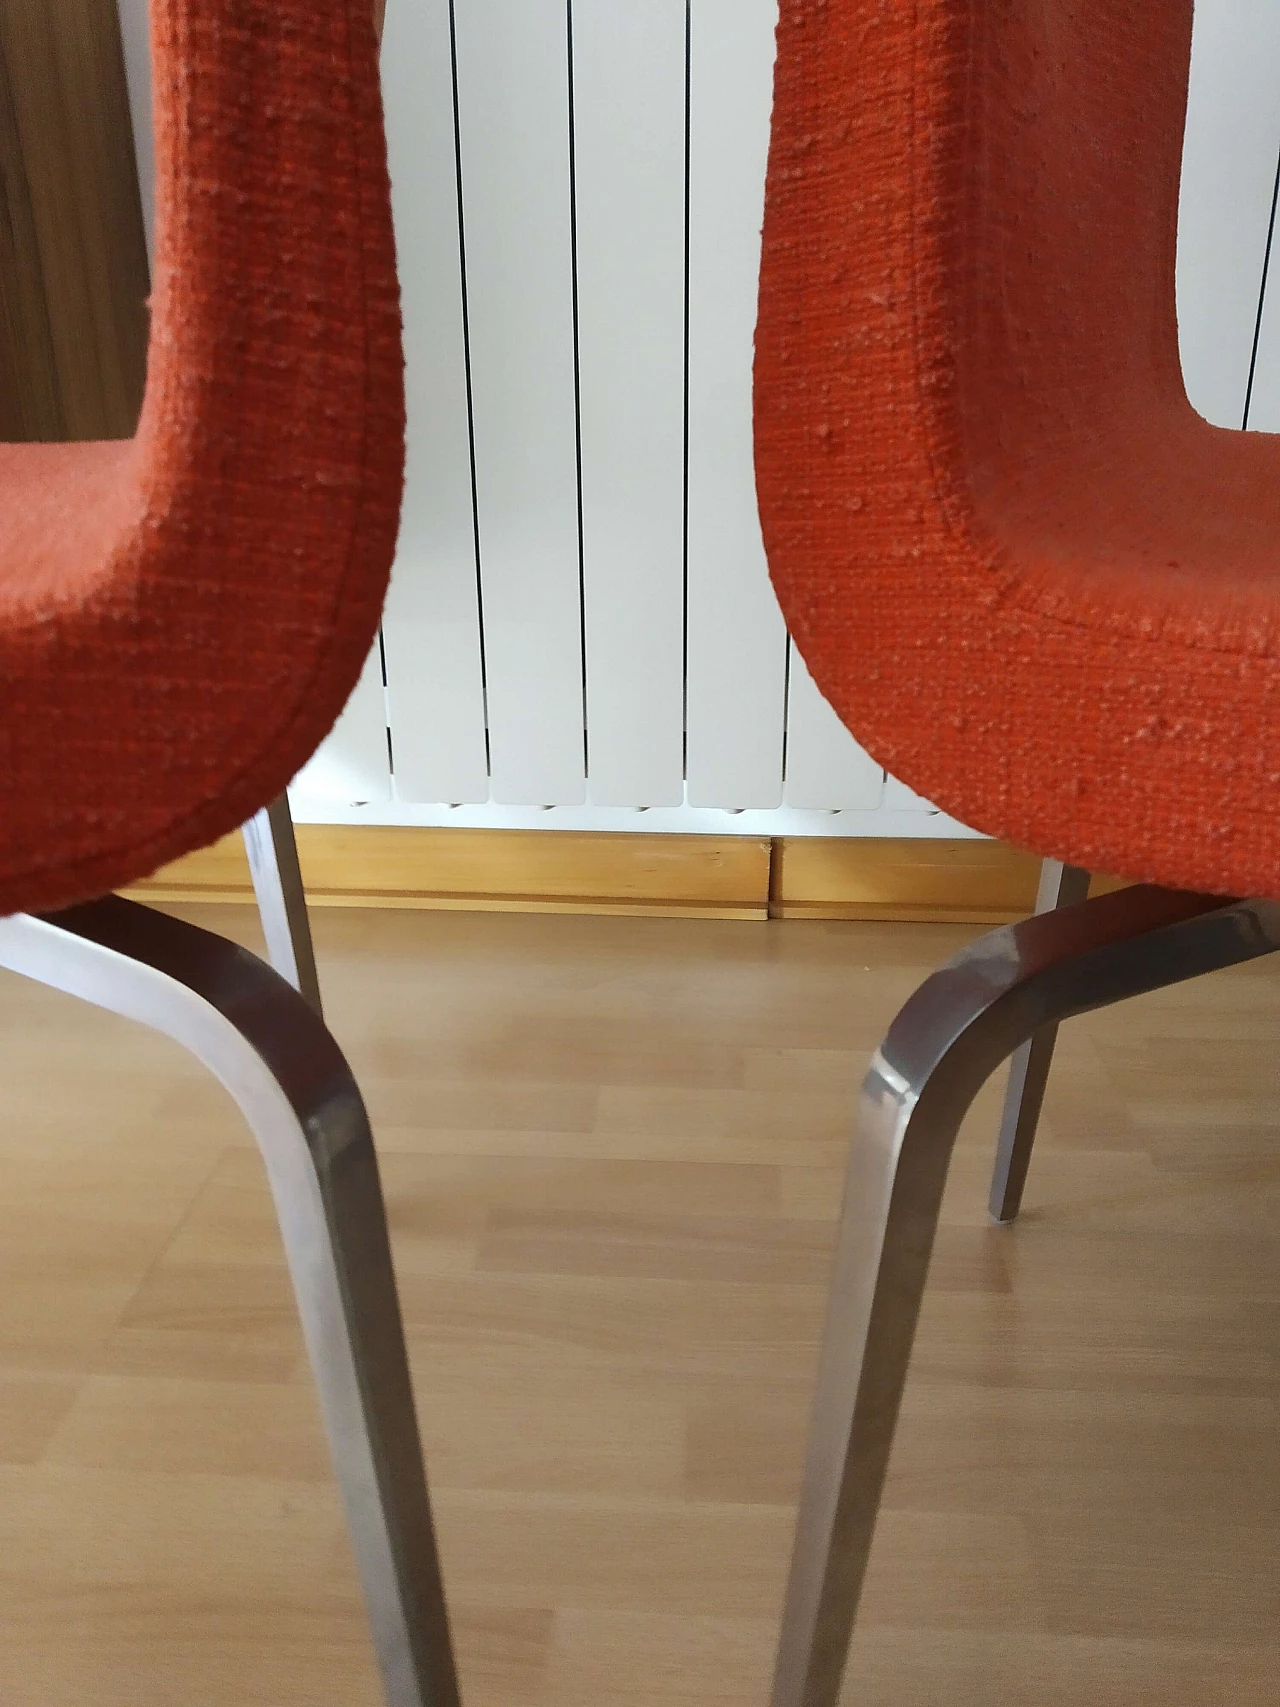 4 Hella Chairs by Mauro Lipparini for MisuraEmme 1477213